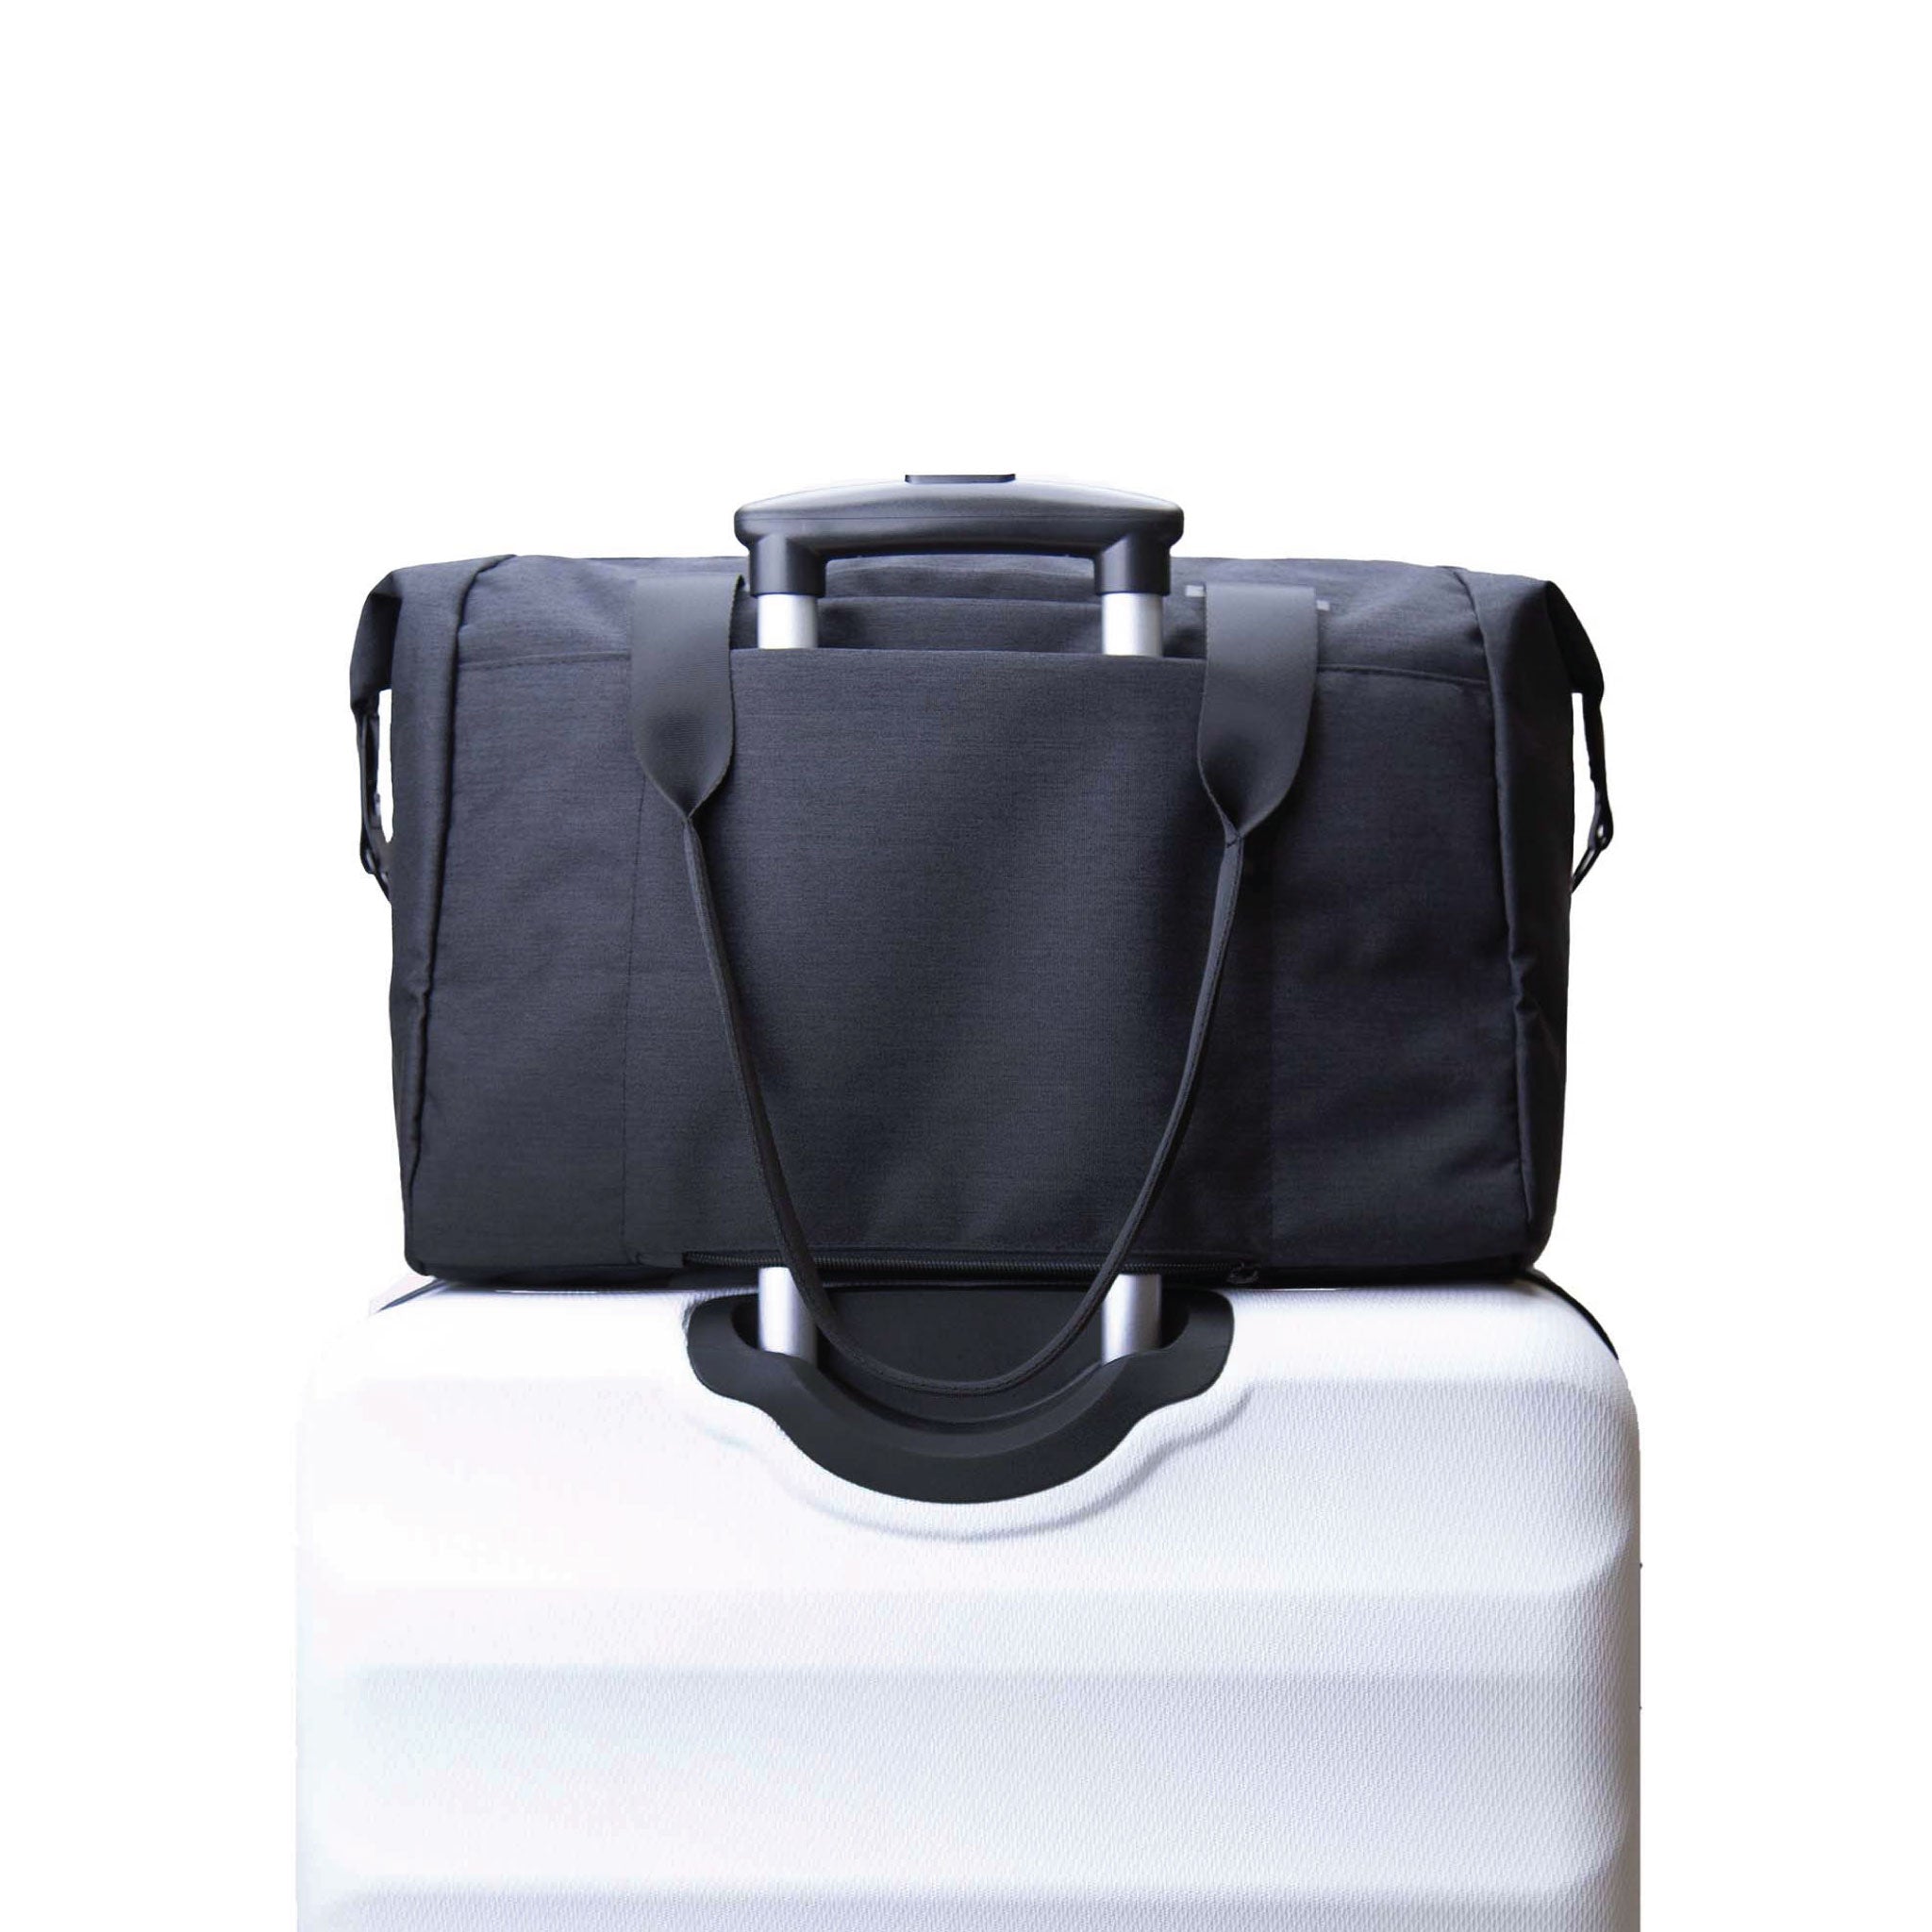 Vooray Alana Duffel Weekender - 25L - Travel Duffel Weekender & Gym Bag with Laptop Sleeve, Shoe Pocket & Dry pocket ()